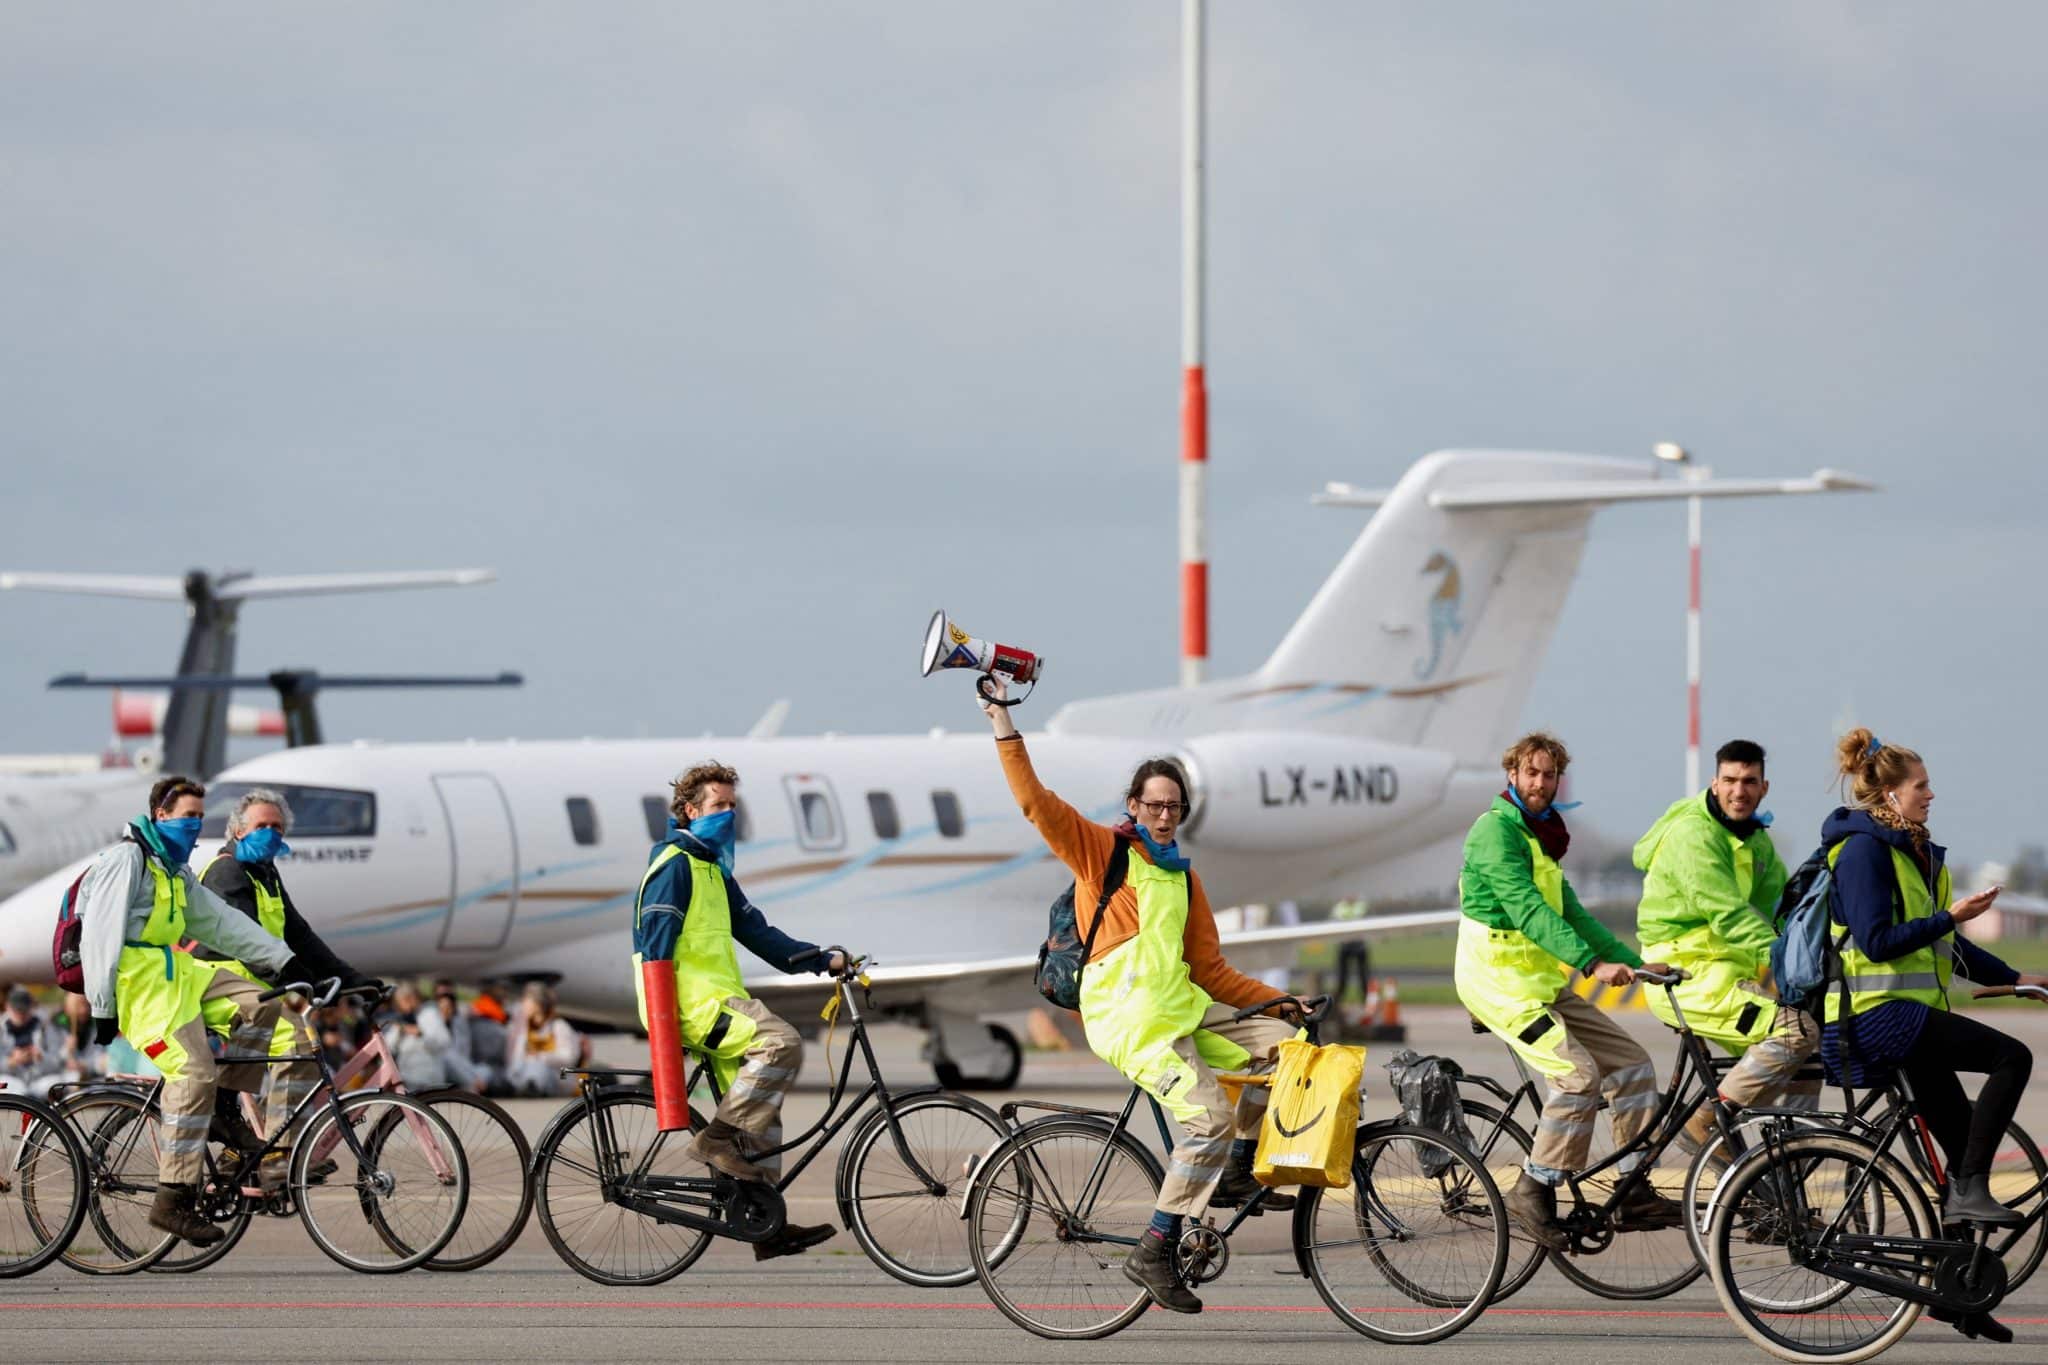 アムステルダム・スキポール空港、航空機とディーゼル排気ガスに対する従業員の保護が不十分だとして厳しい監視を受ける